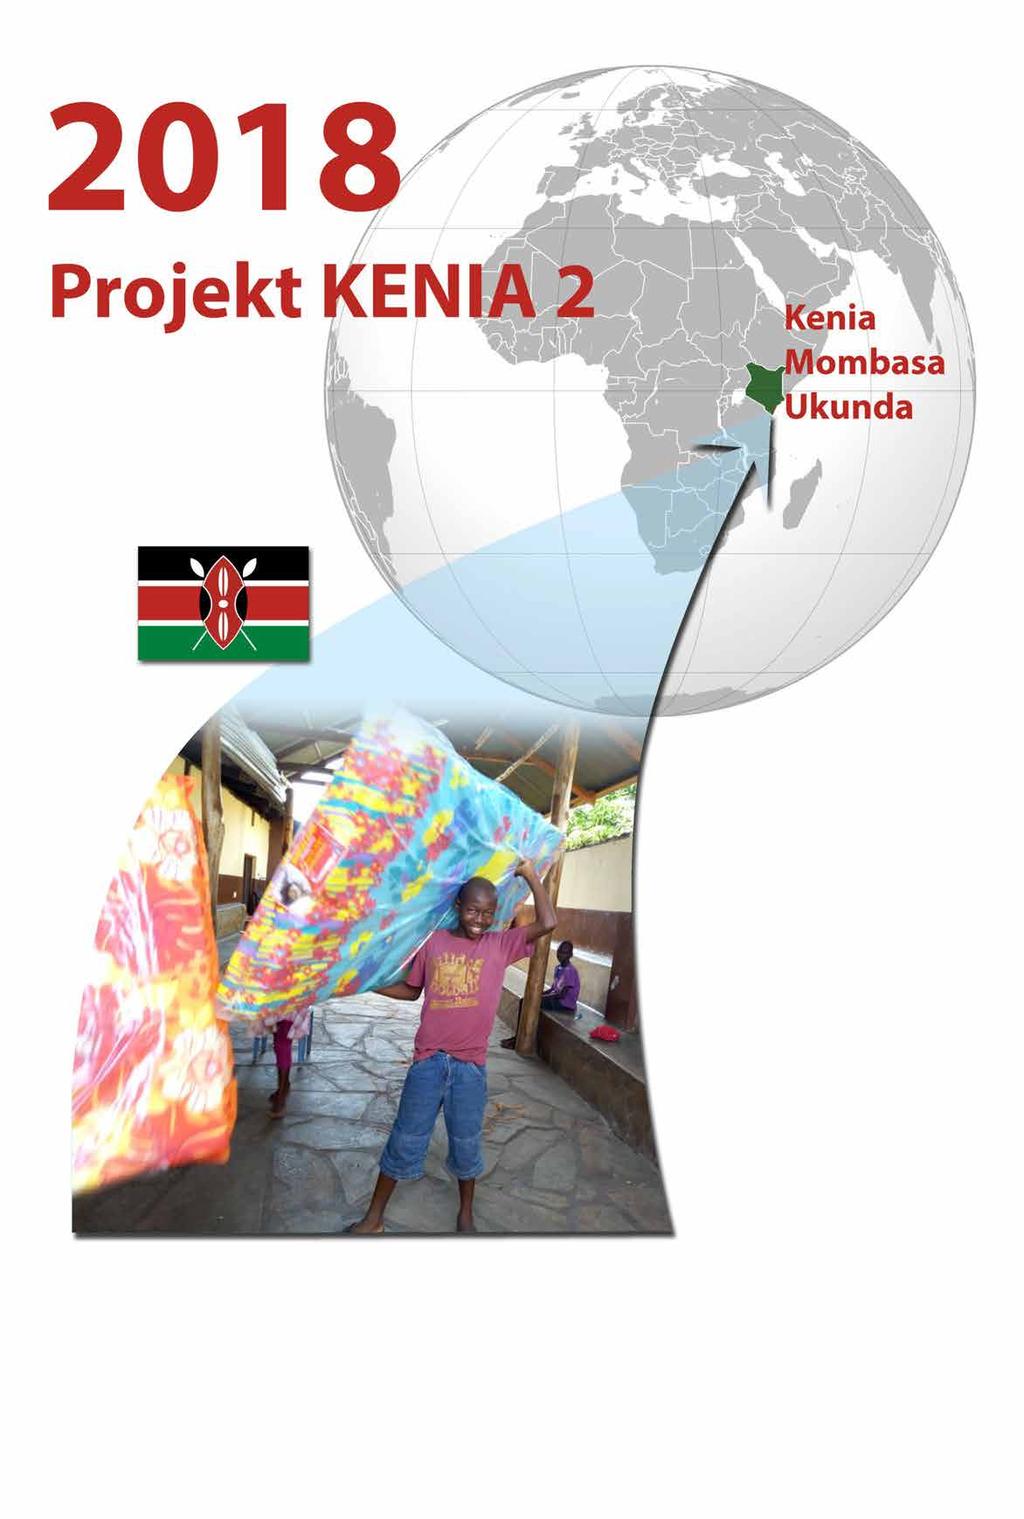 GRUDNIA wyruszyliśmy do Kenii aby sfinalizować pierwszą edycję "PROJEKTU KENIA". I choć obawialiśmy czy podołamy wyzwaniu i założeniom projektu, teraz z dumą możemy powiedzieć - HURAAA! Udało się!